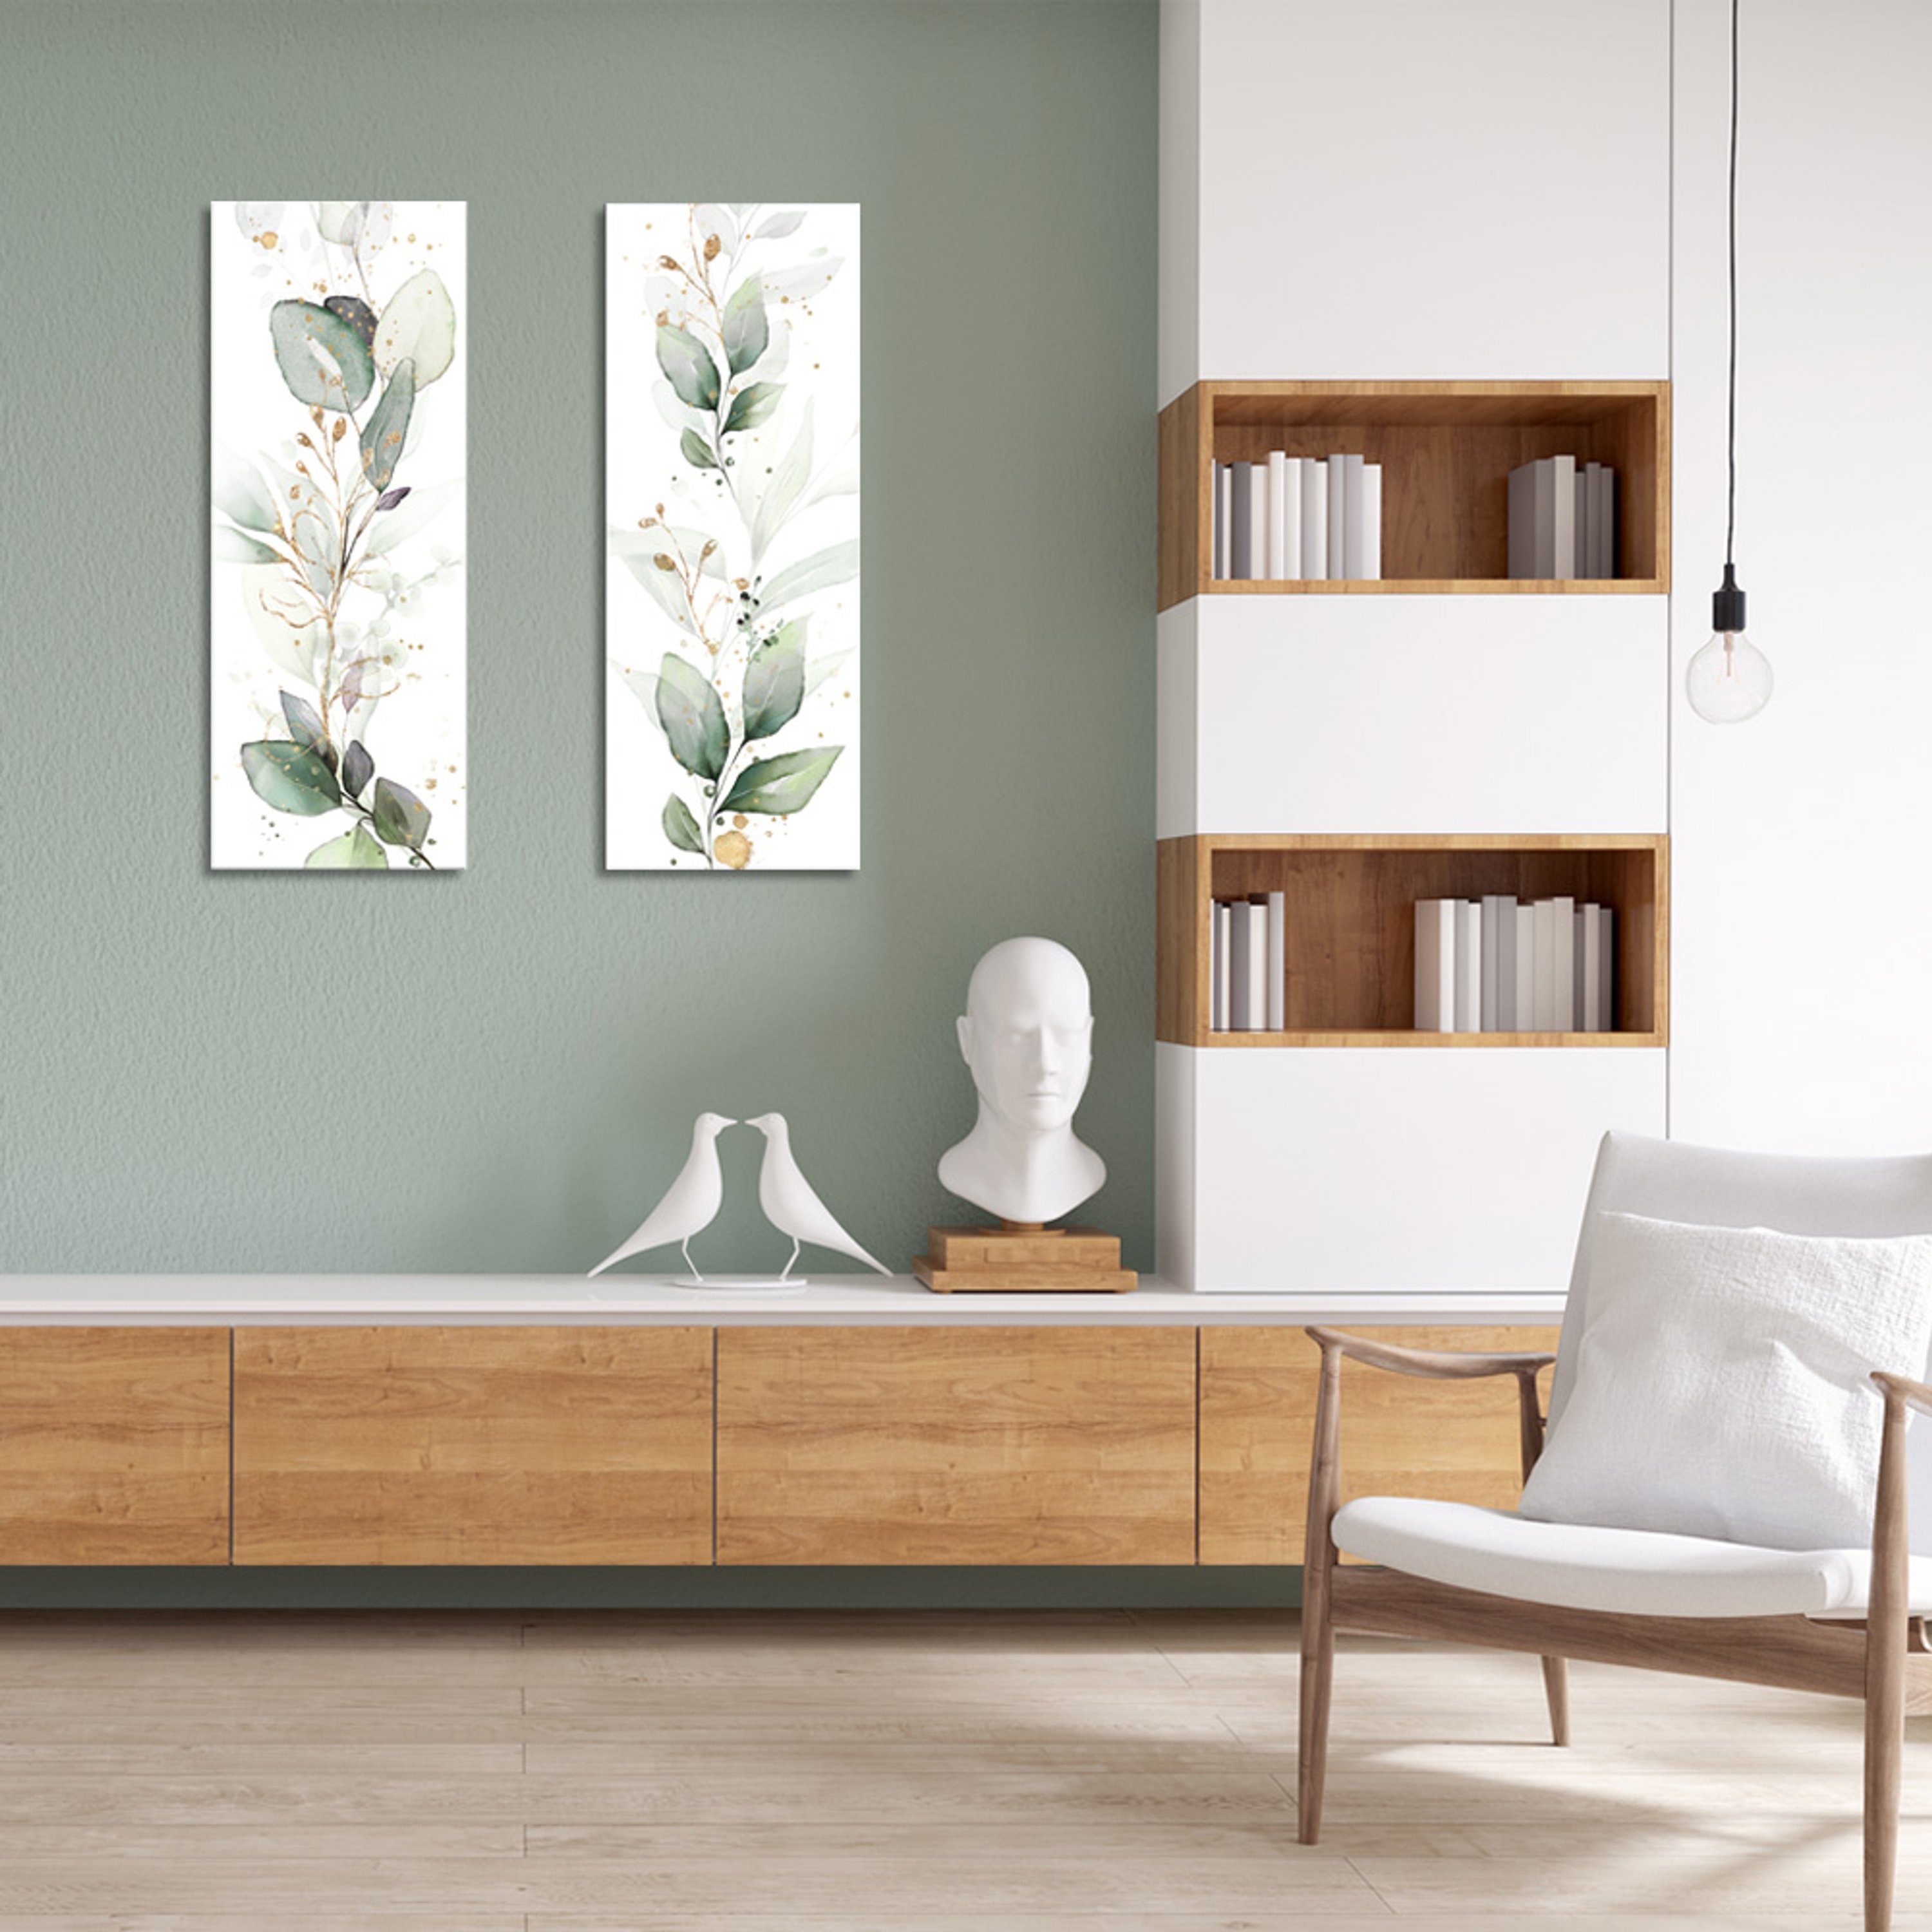 artissimo Glasbild Glasbild 30x80cm Bild : Eukalyptus Pflanzen und II Natur aus Aquarell-Malerei Zweige Mint-Grün Gold, Glas